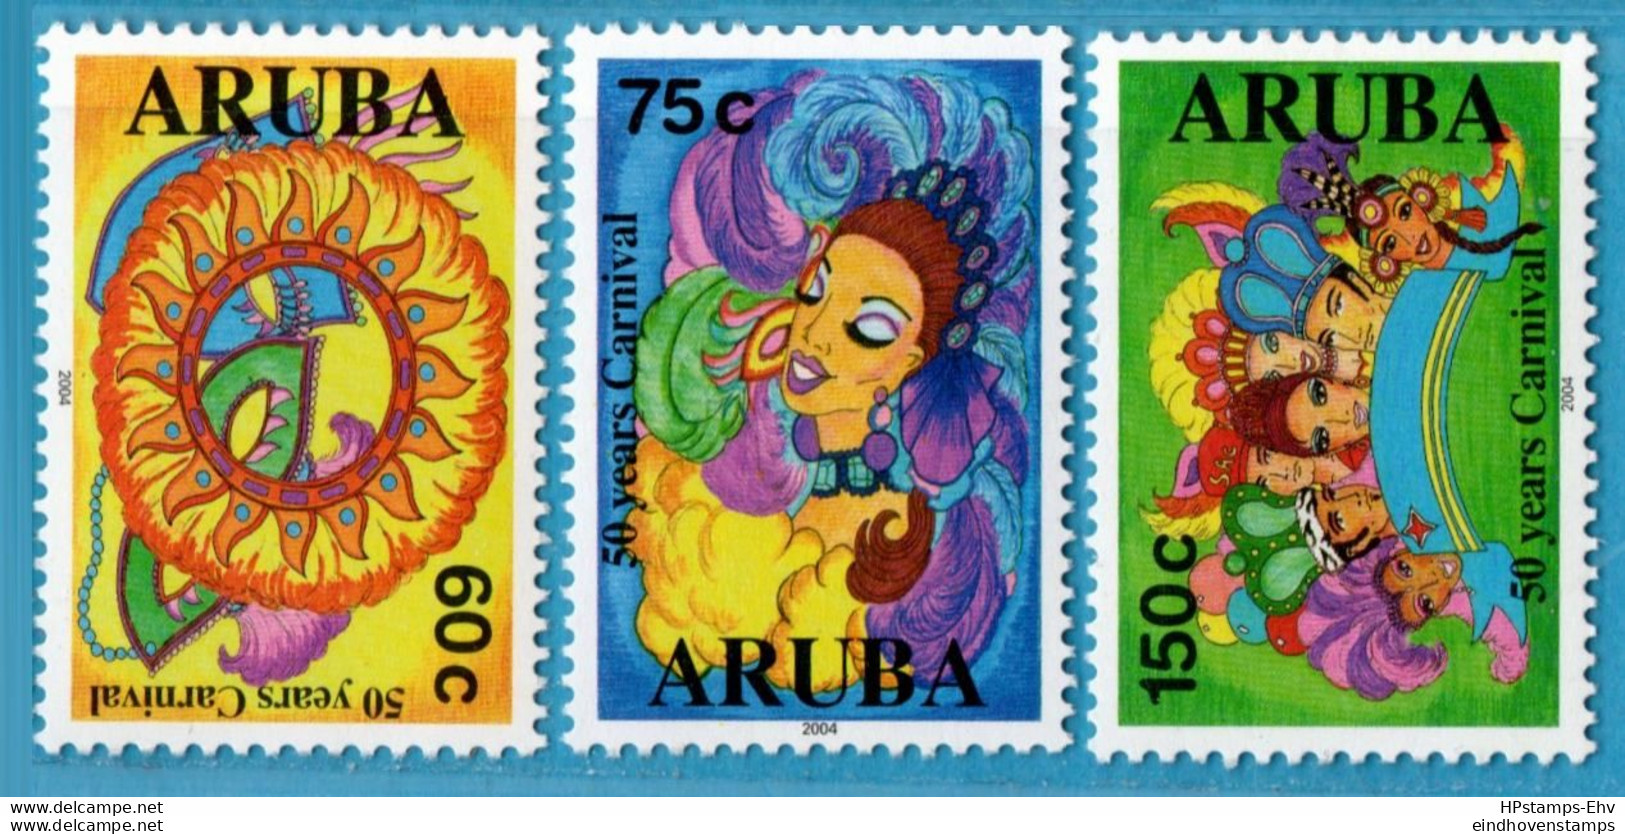 Aruba 2004 Carnavale 3 Values 04-01 MNH Masks, Costumes - Karnaval